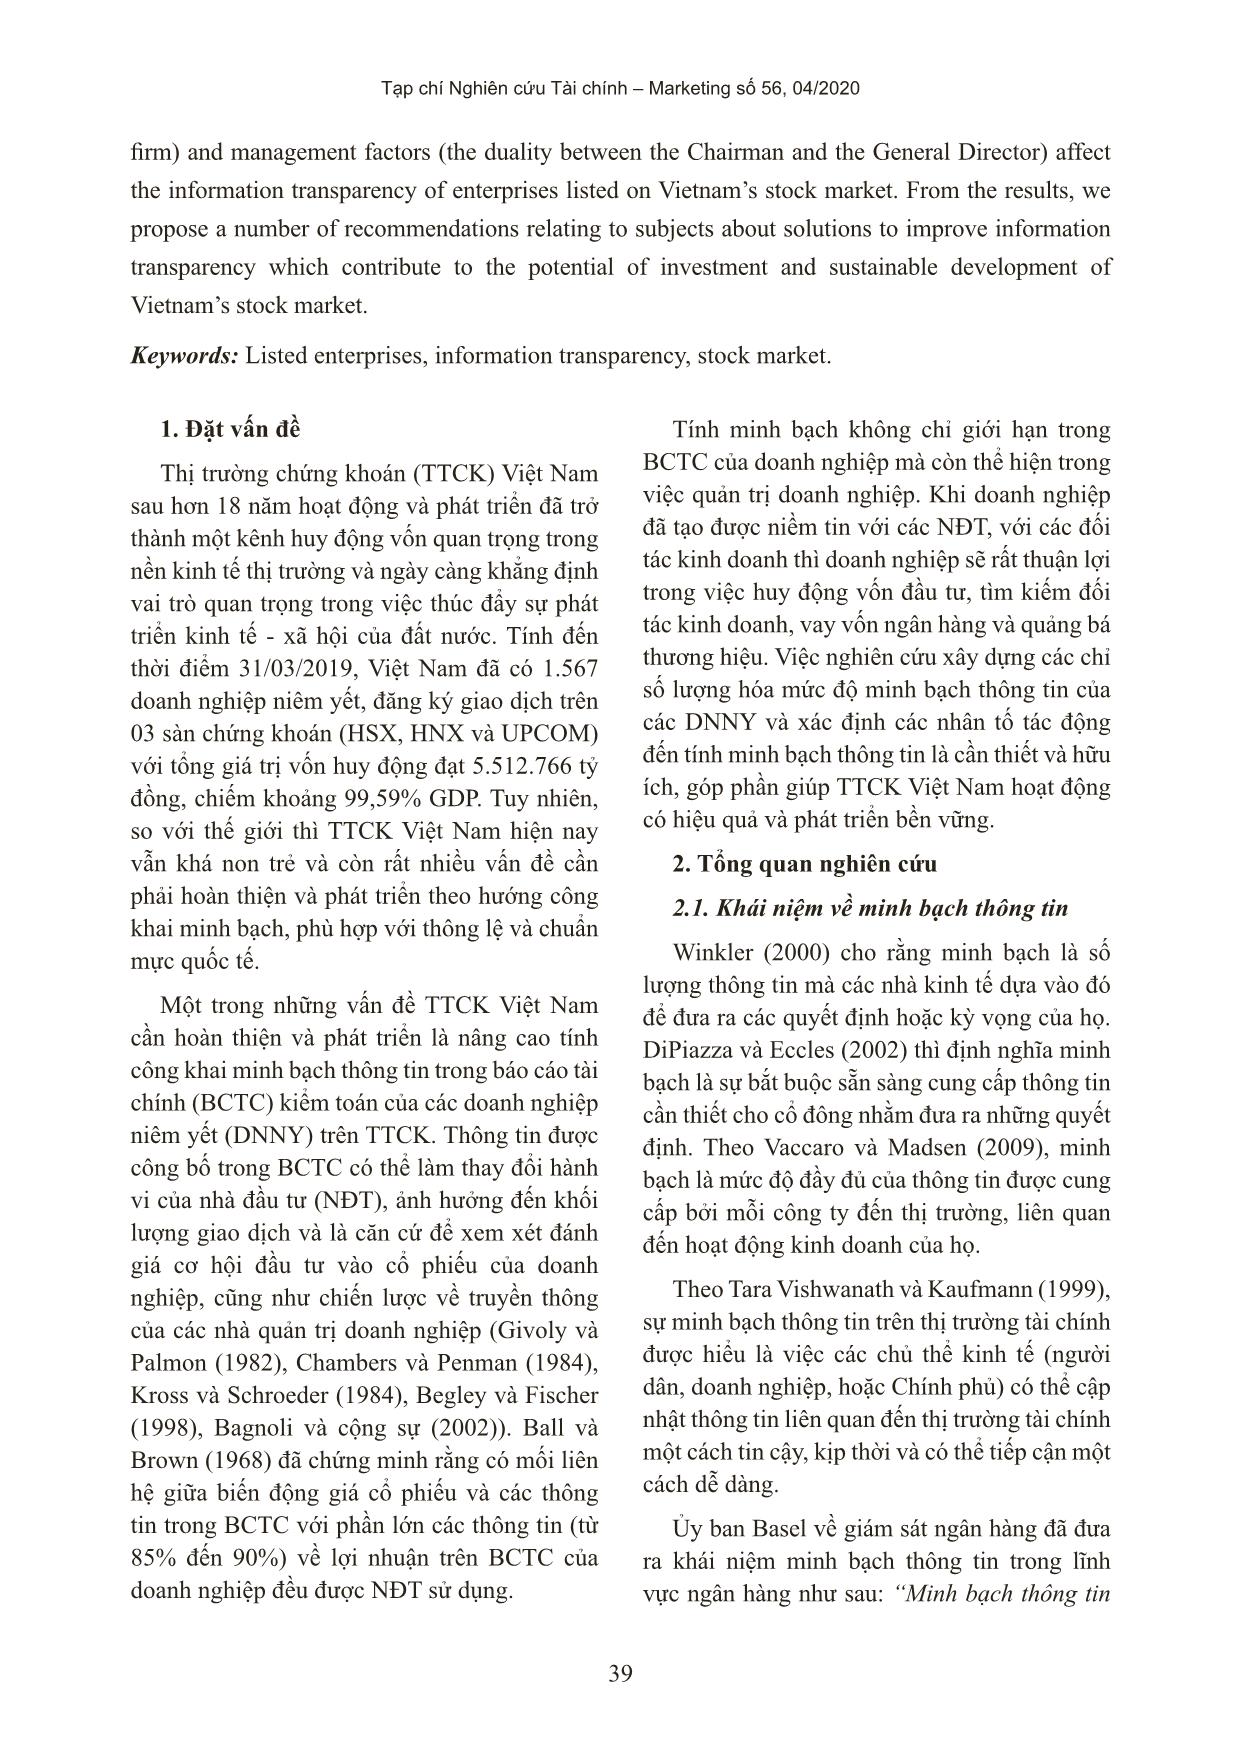 Minh bạch thông tin và các yếu tố ảnh hưởng - bằng chứng thực nghiệm tại Việt Nam trang 2